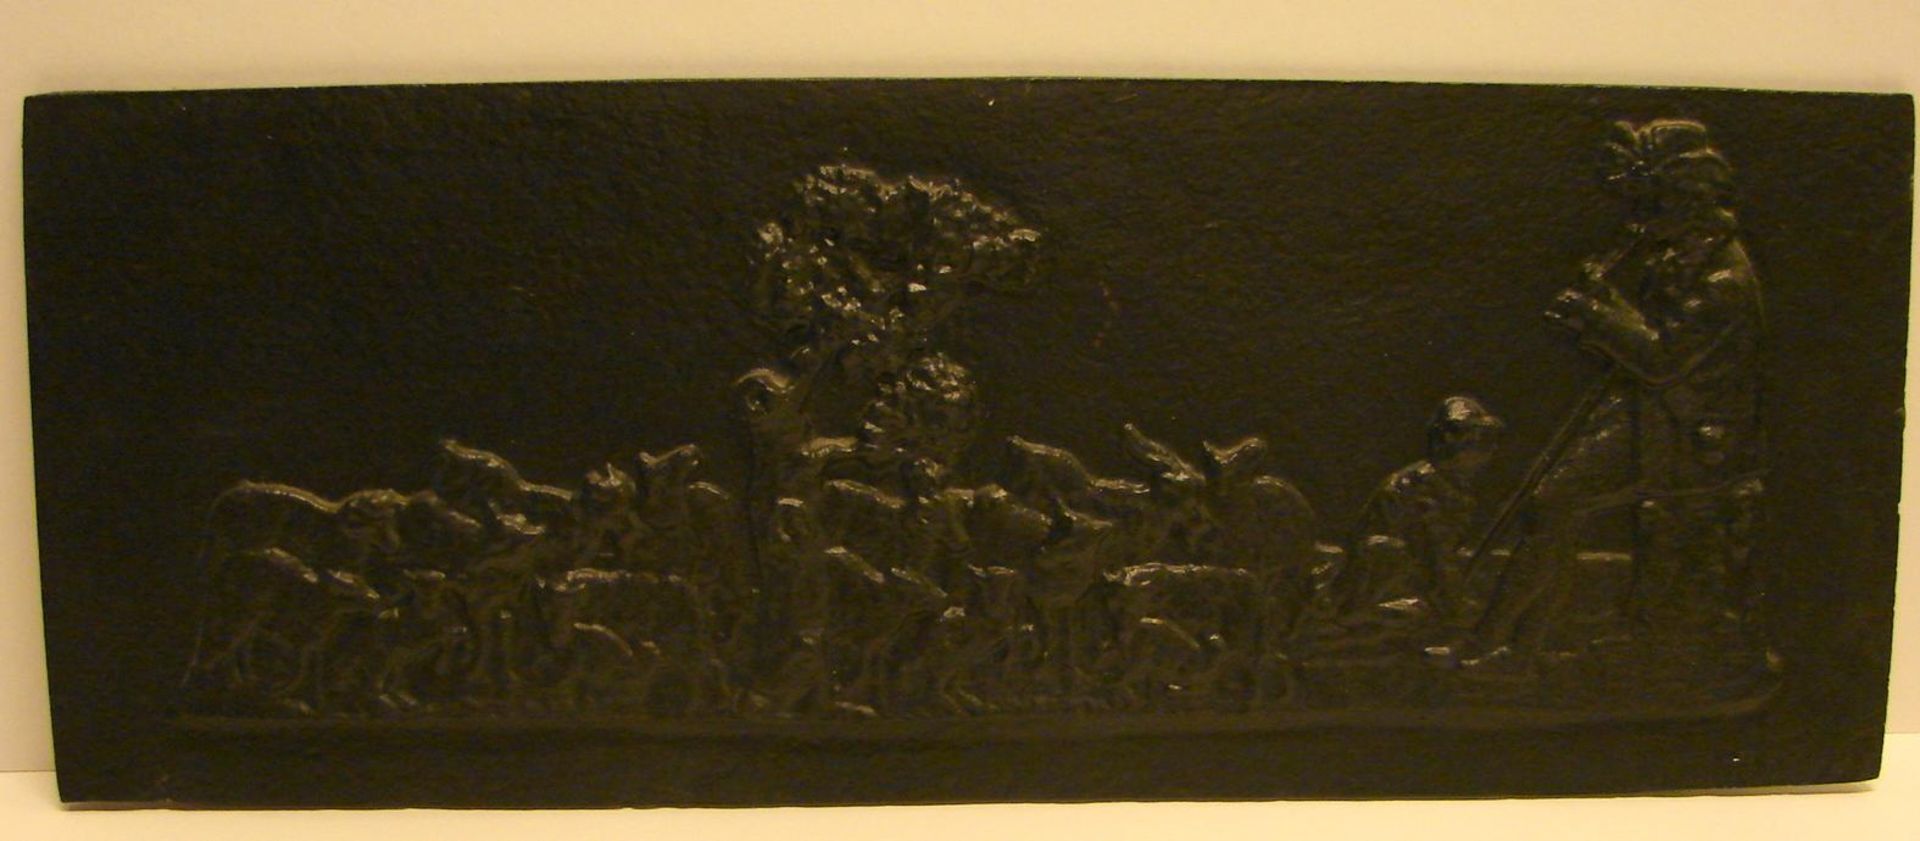 Gusseiserne Platte mit Schäfermotiv, mit zahlreichen Tiermotiven, ca. 19 x 50 cm